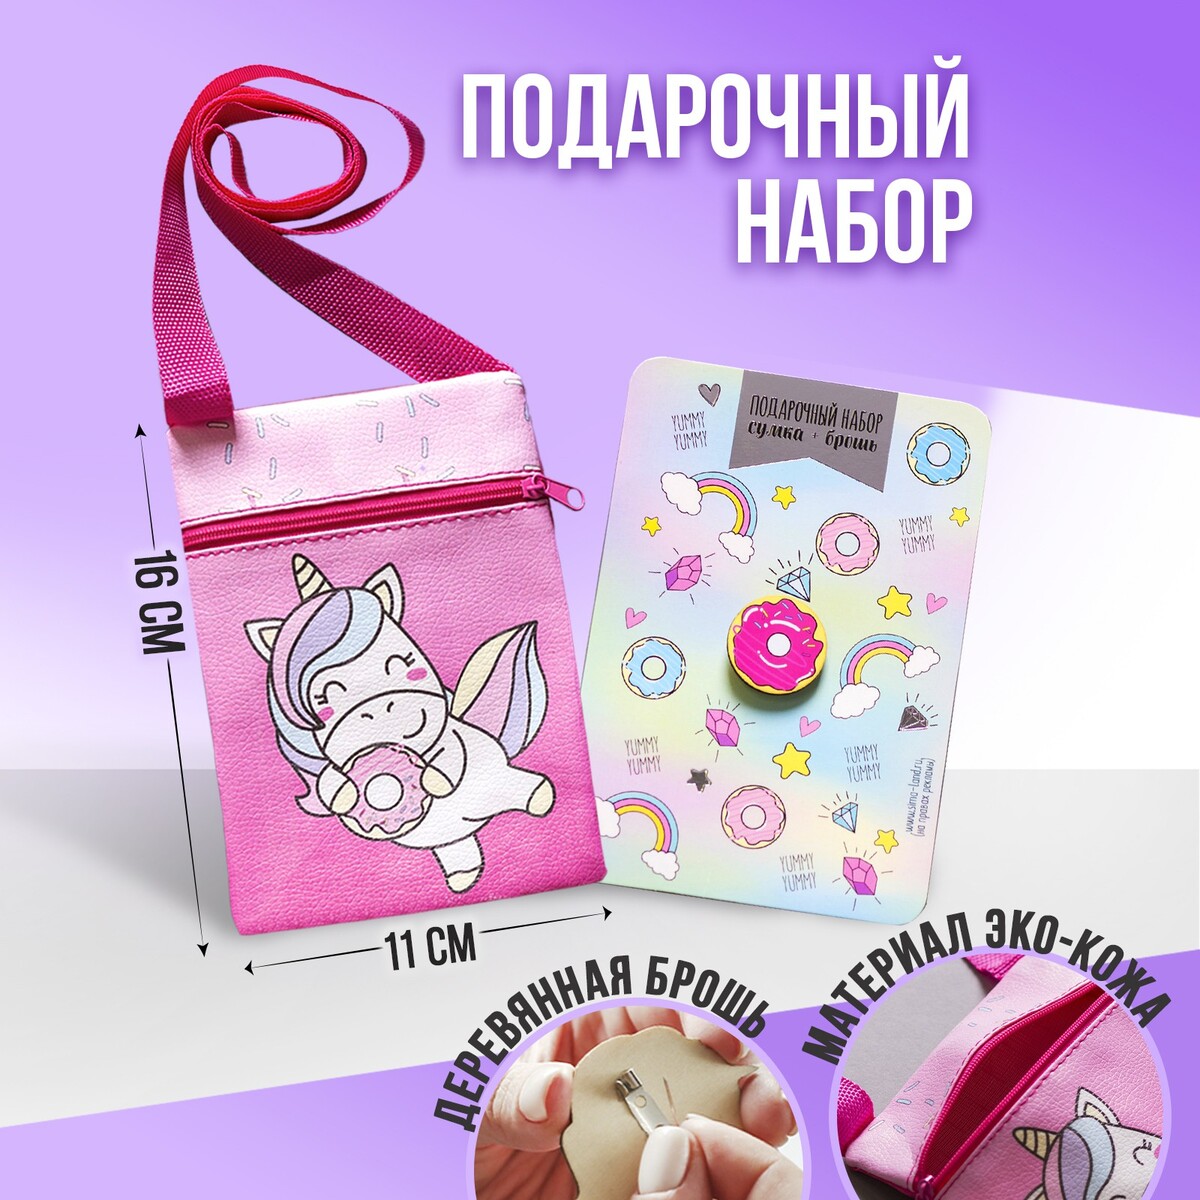 Детский подарочный набор единорожка: сумка + брошь, цвет розовый